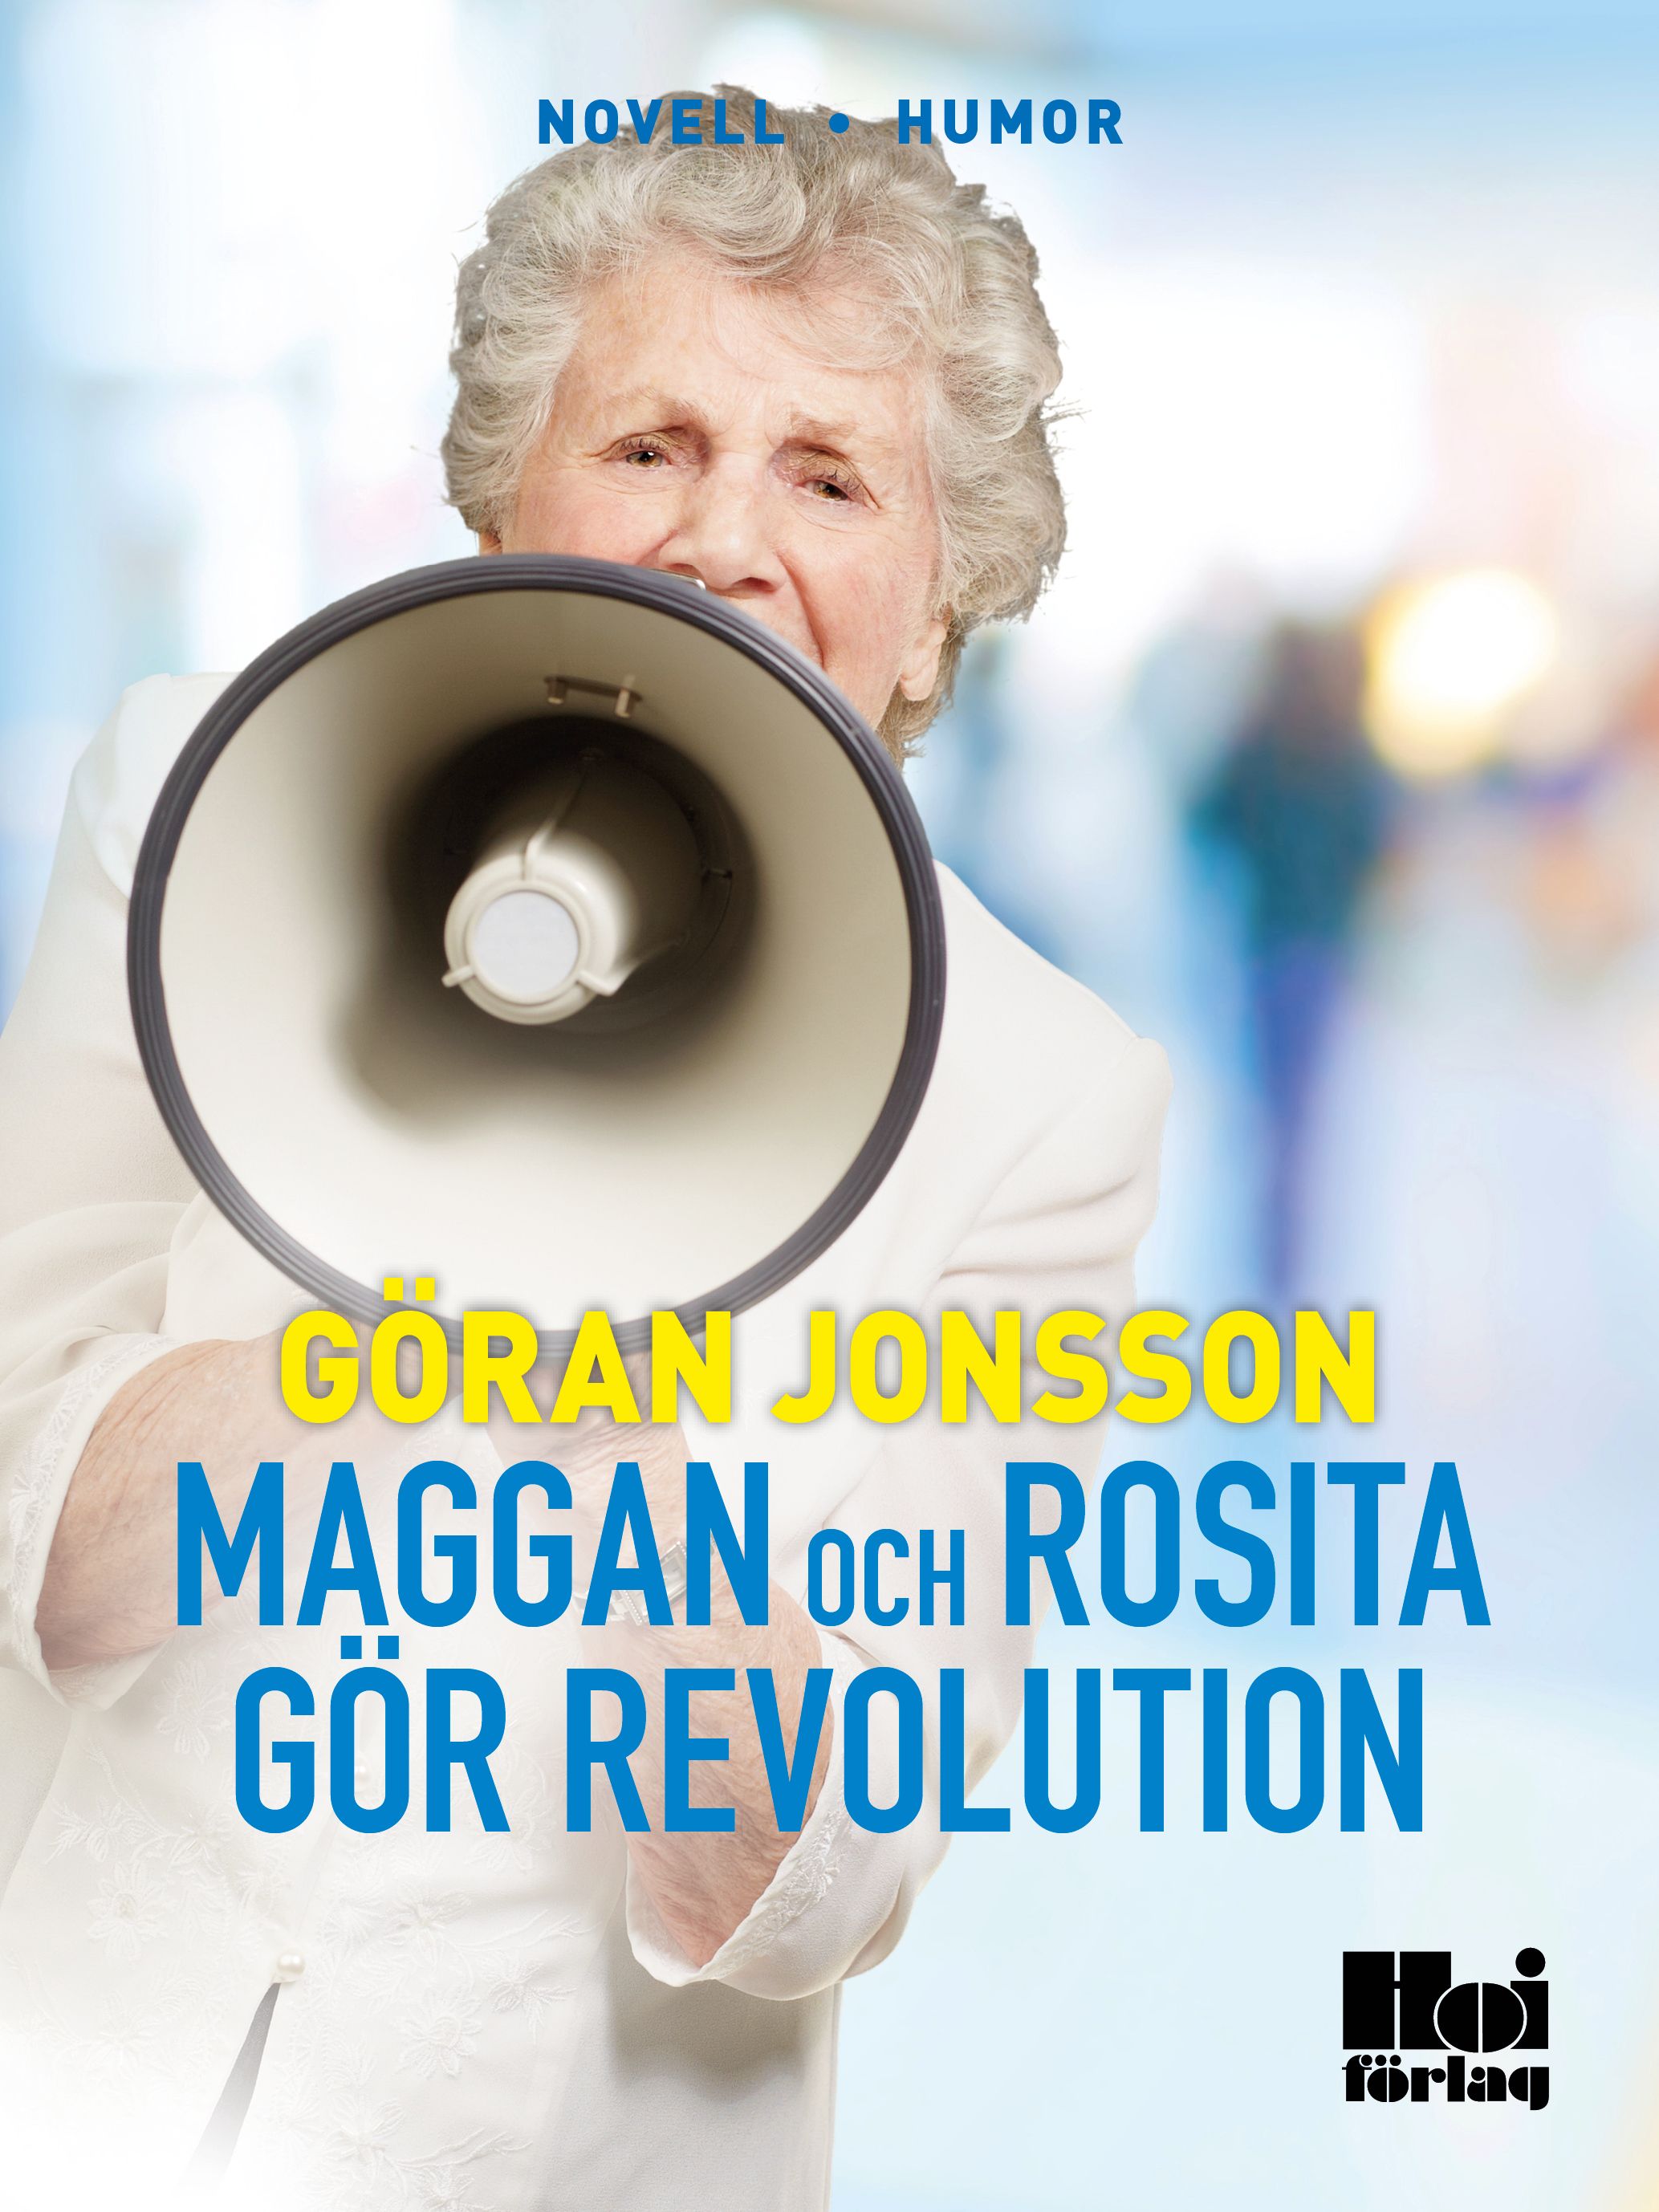 Maggan och Rosita gör revolution, eBook by Göran Jonsson